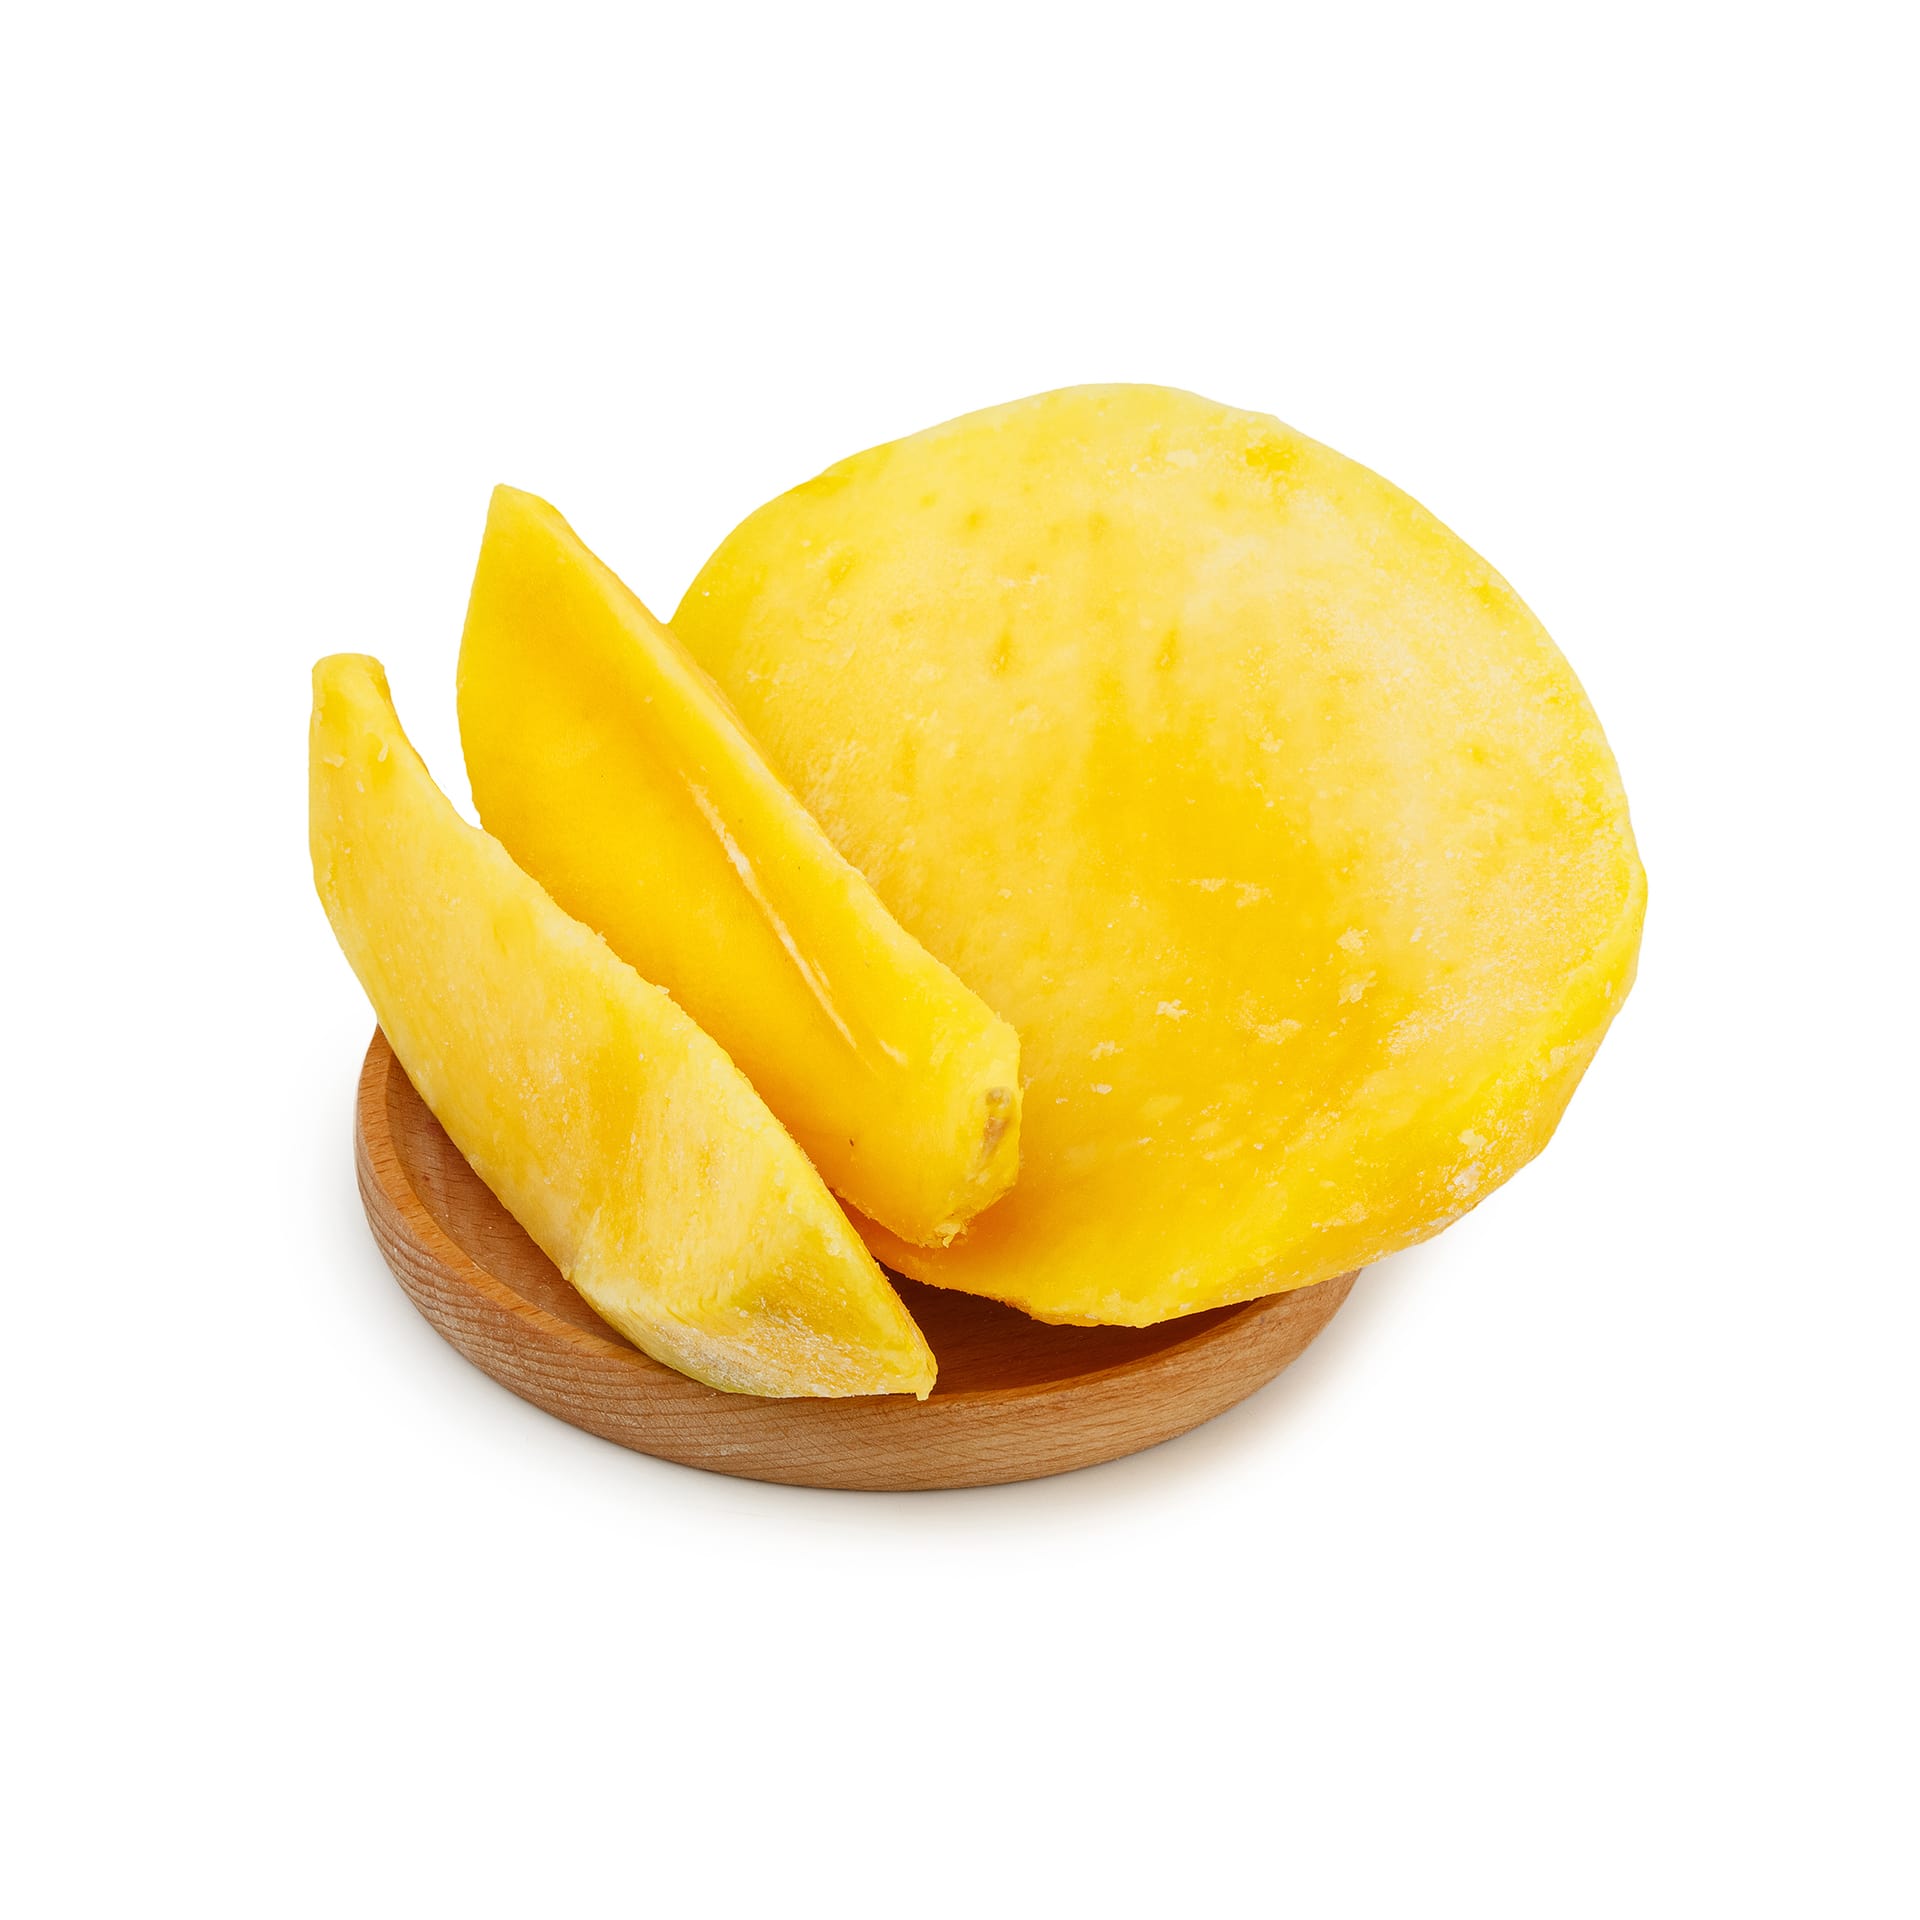 Замороженное манго ломтики 1 кг 8377LED, общий вид, купить оптом с доставкой по москве и московской области, недорого, низкая цена